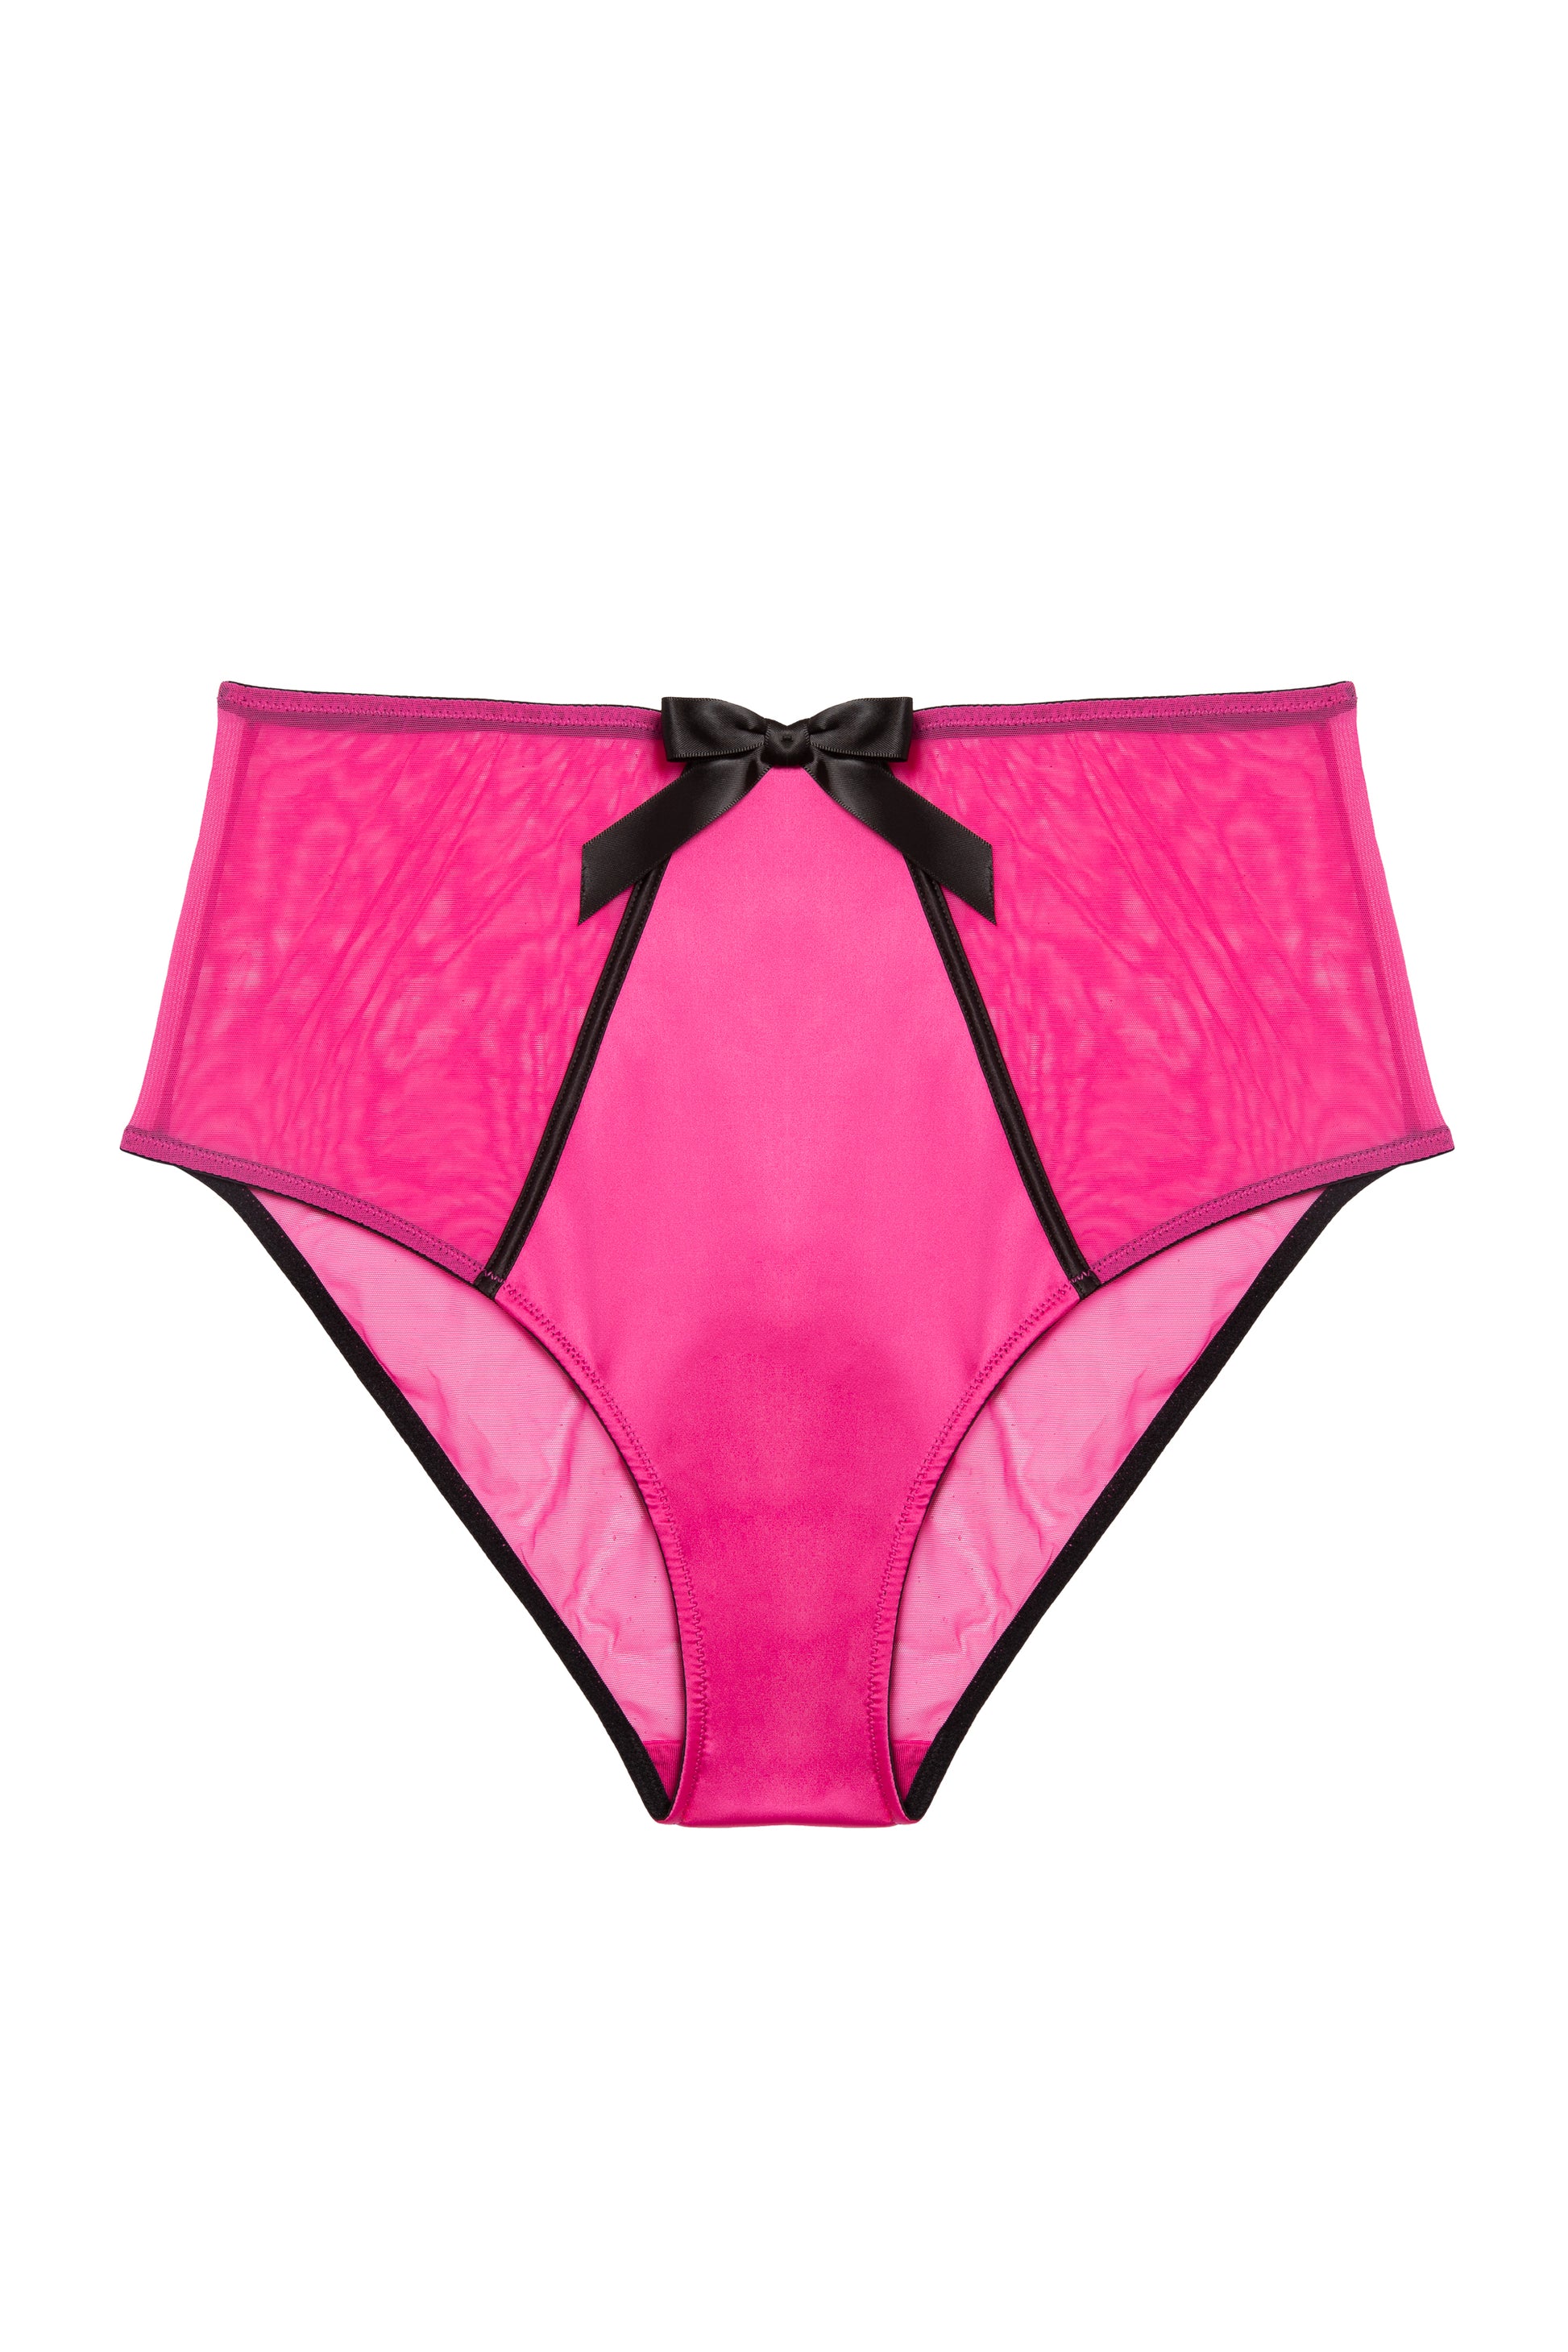 Sayu – Pink High-Waist Nighttime Panties